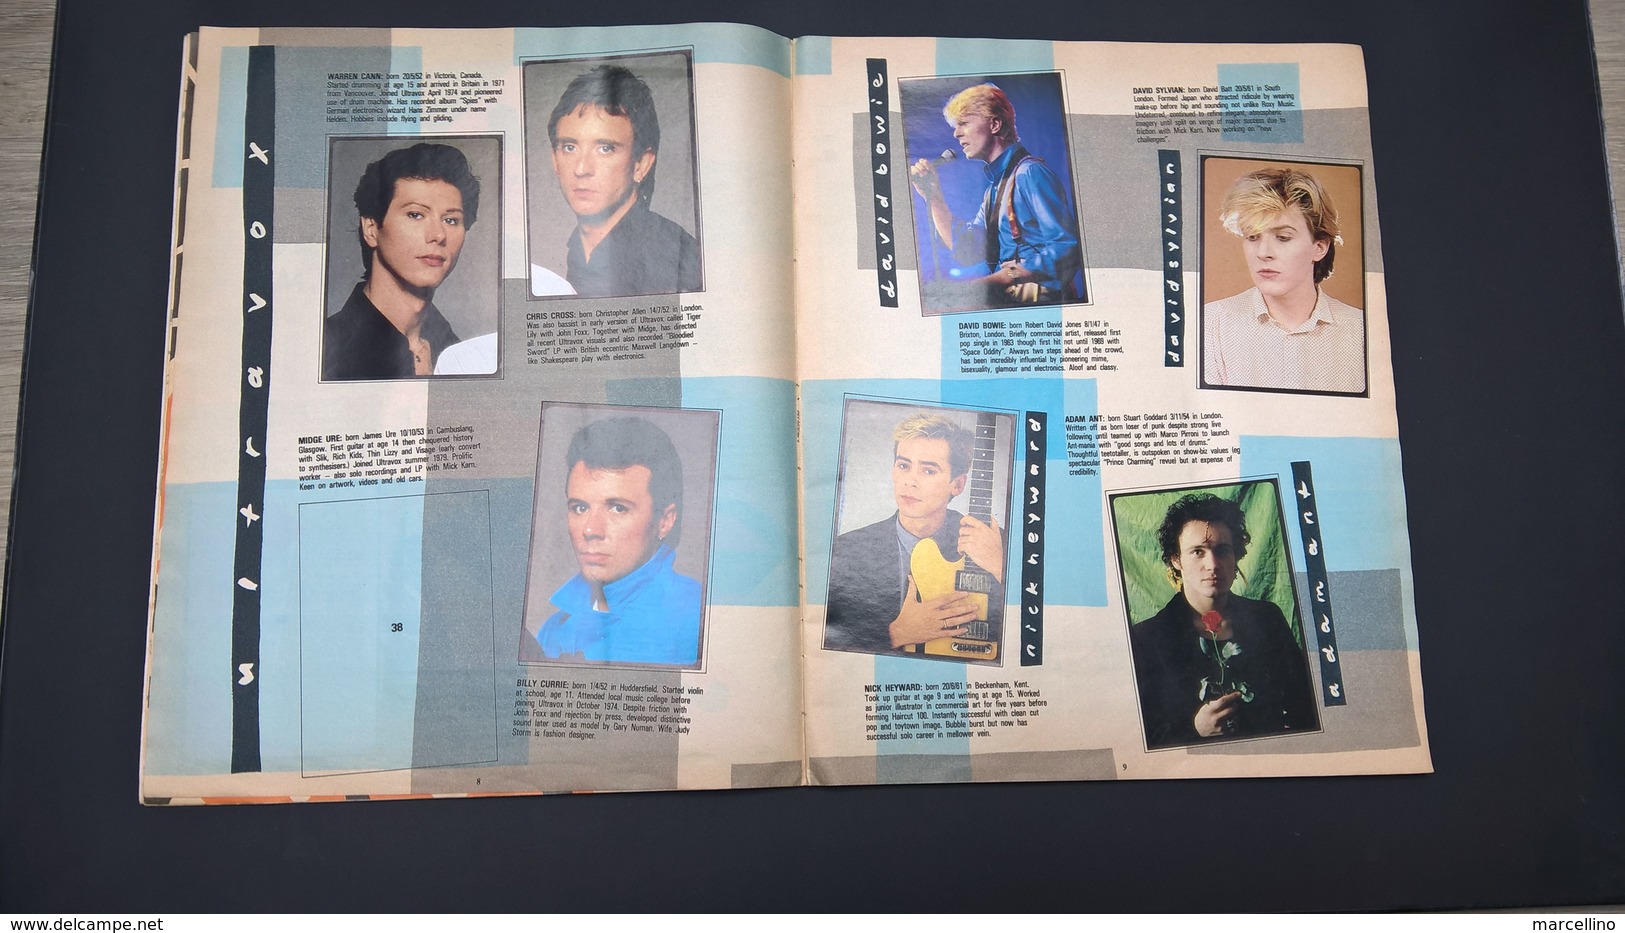 Album Panini The Smash Hits Collection 1984 INCOMPLET. Détails voir scans de toutes les pages.